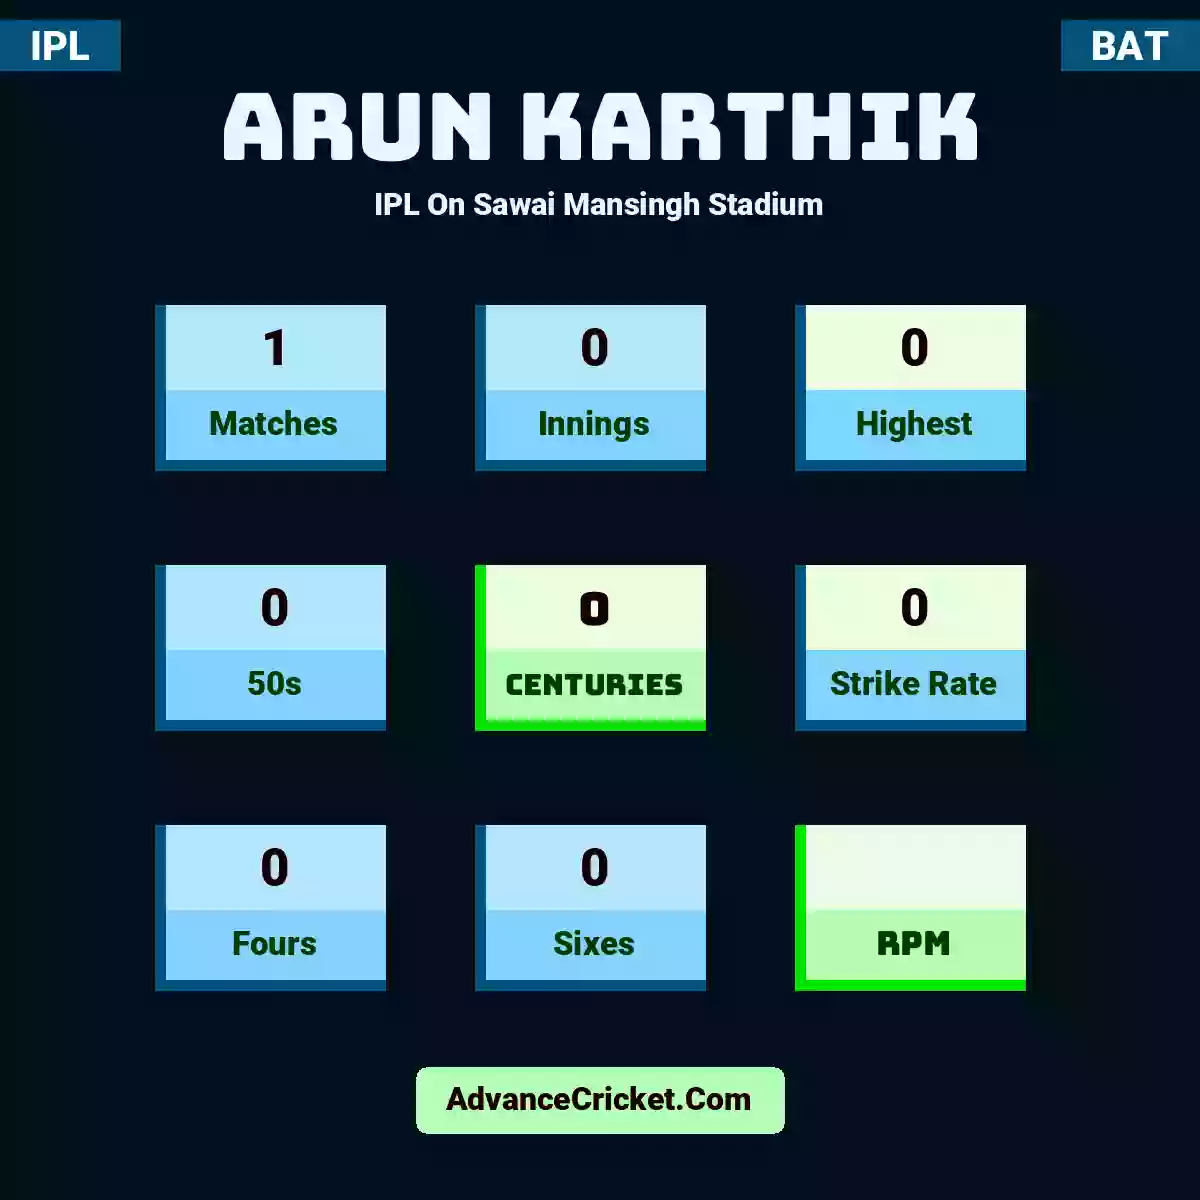 Arun Karthik IPL  On Sawai Mansingh Stadium, Arun Karthik played 1 matches, scored 0 runs as highest, 0 half-centuries, and 0 centuries, with a strike rate of 0. A.Karthik hit 0 fours and 0 sixes.